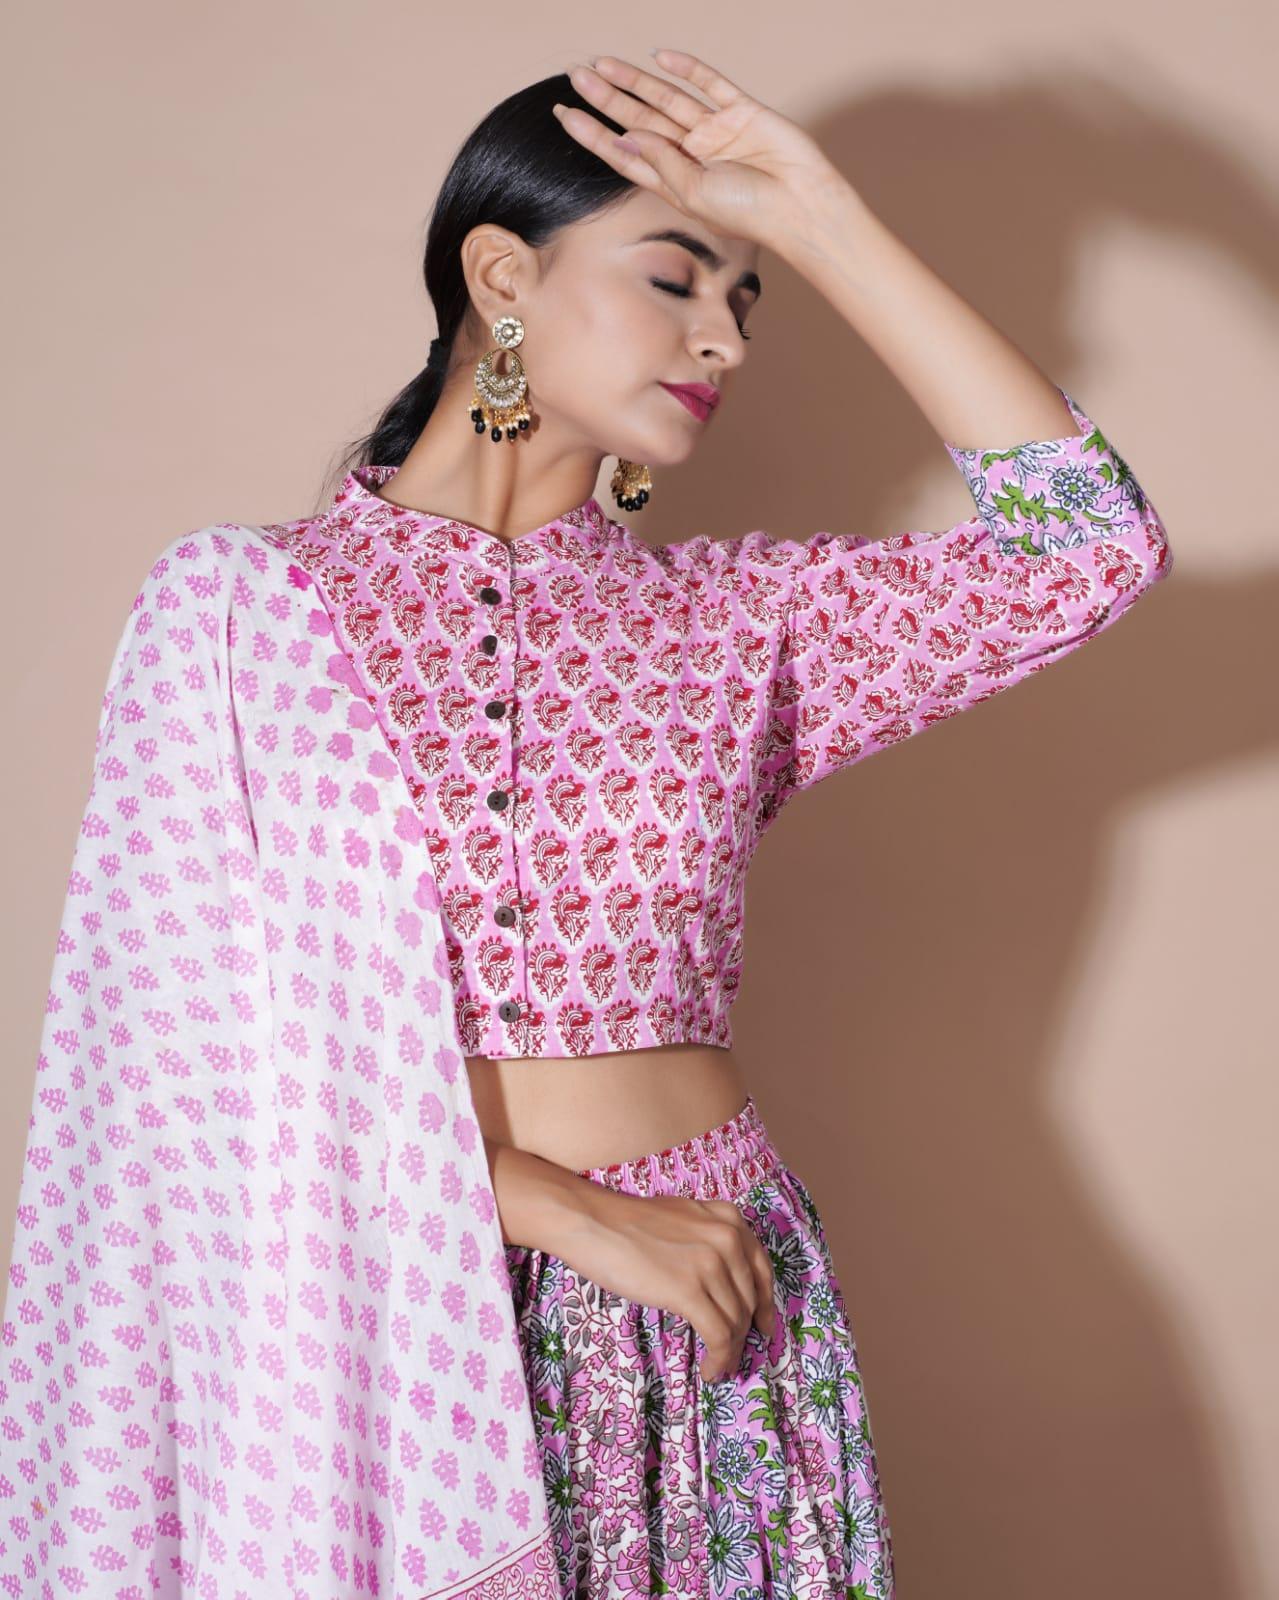 Baby Pink Toned Premium Chanderi Fabric Digital Printed Lehenga Choli